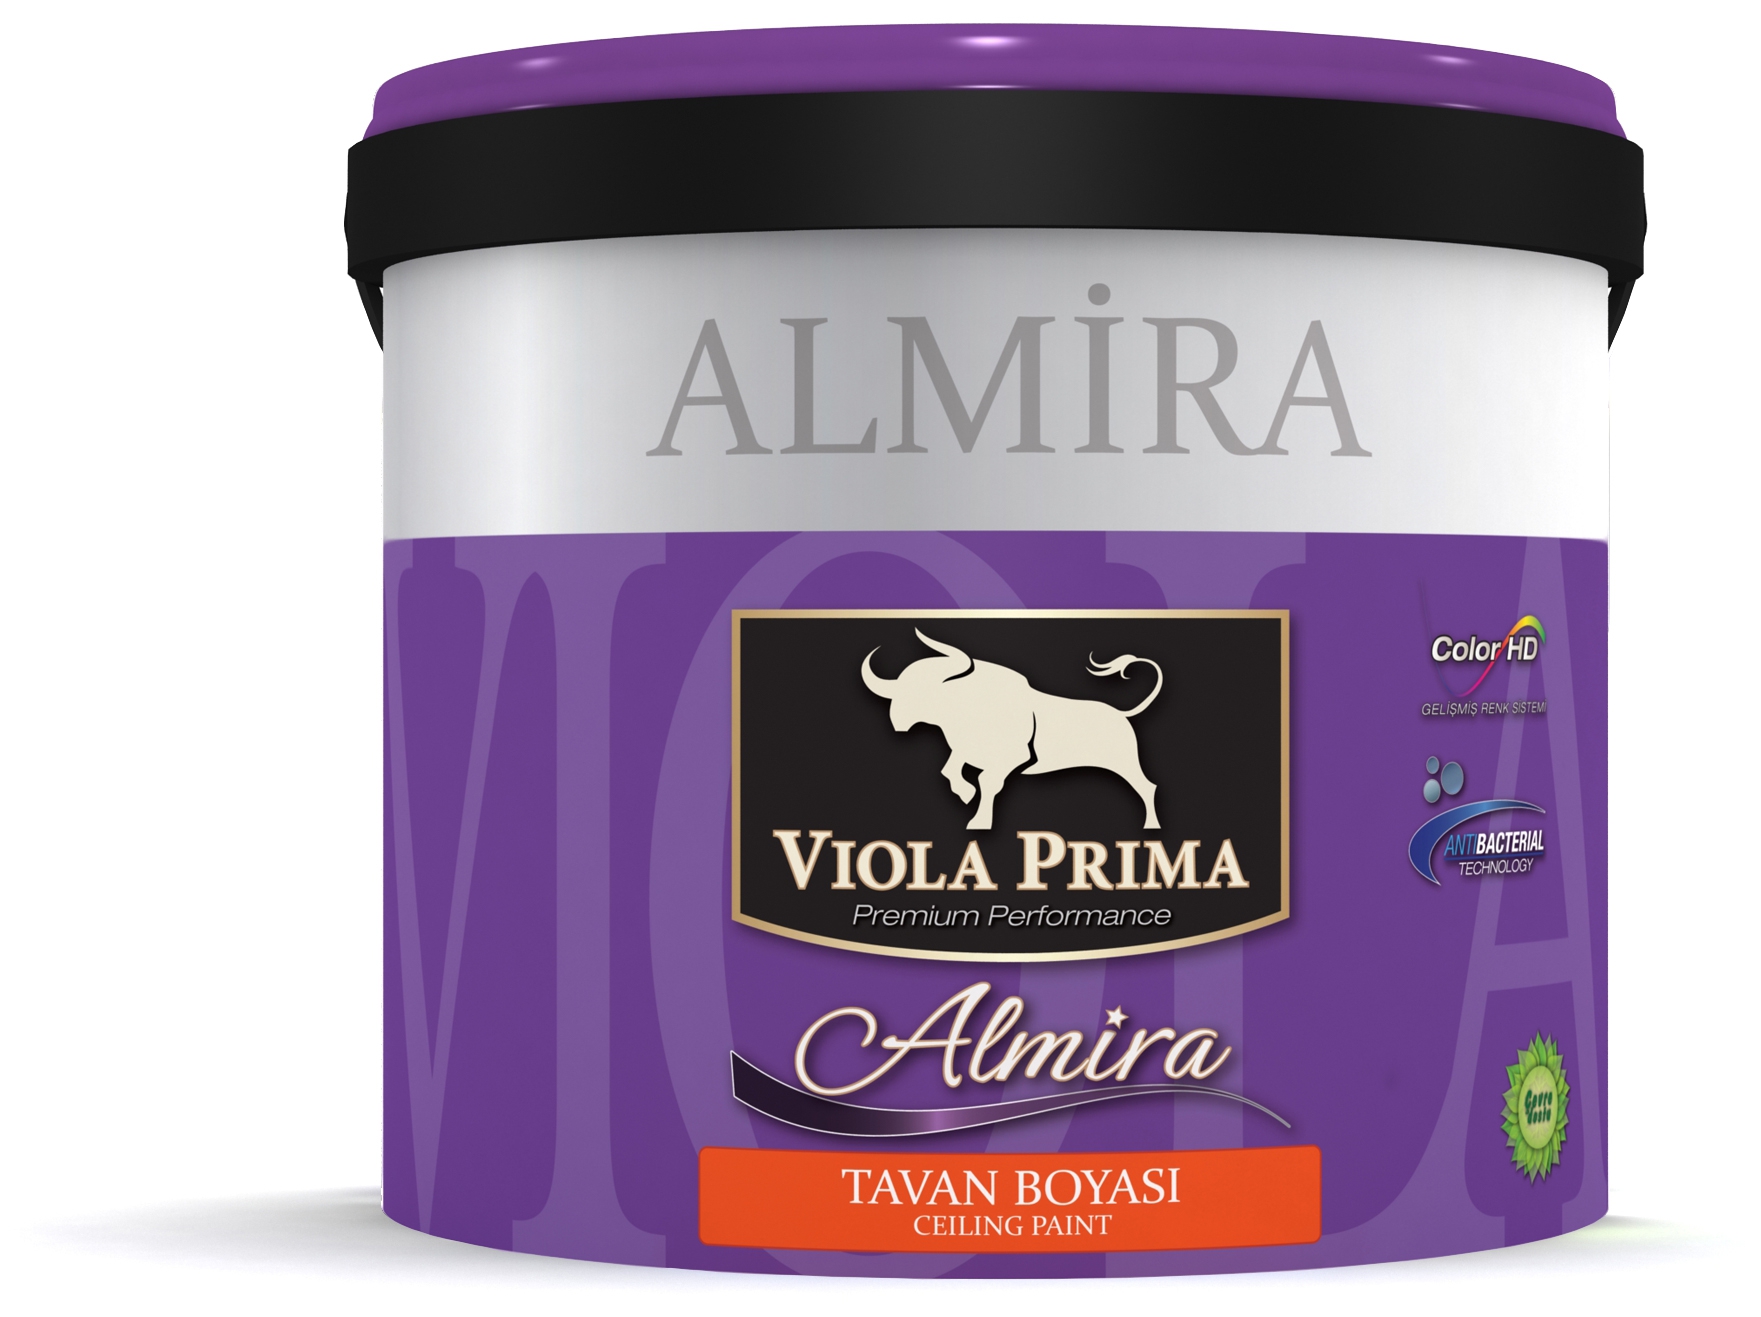 Viola Prima Almira Tavan Boyası 3.5 Kg